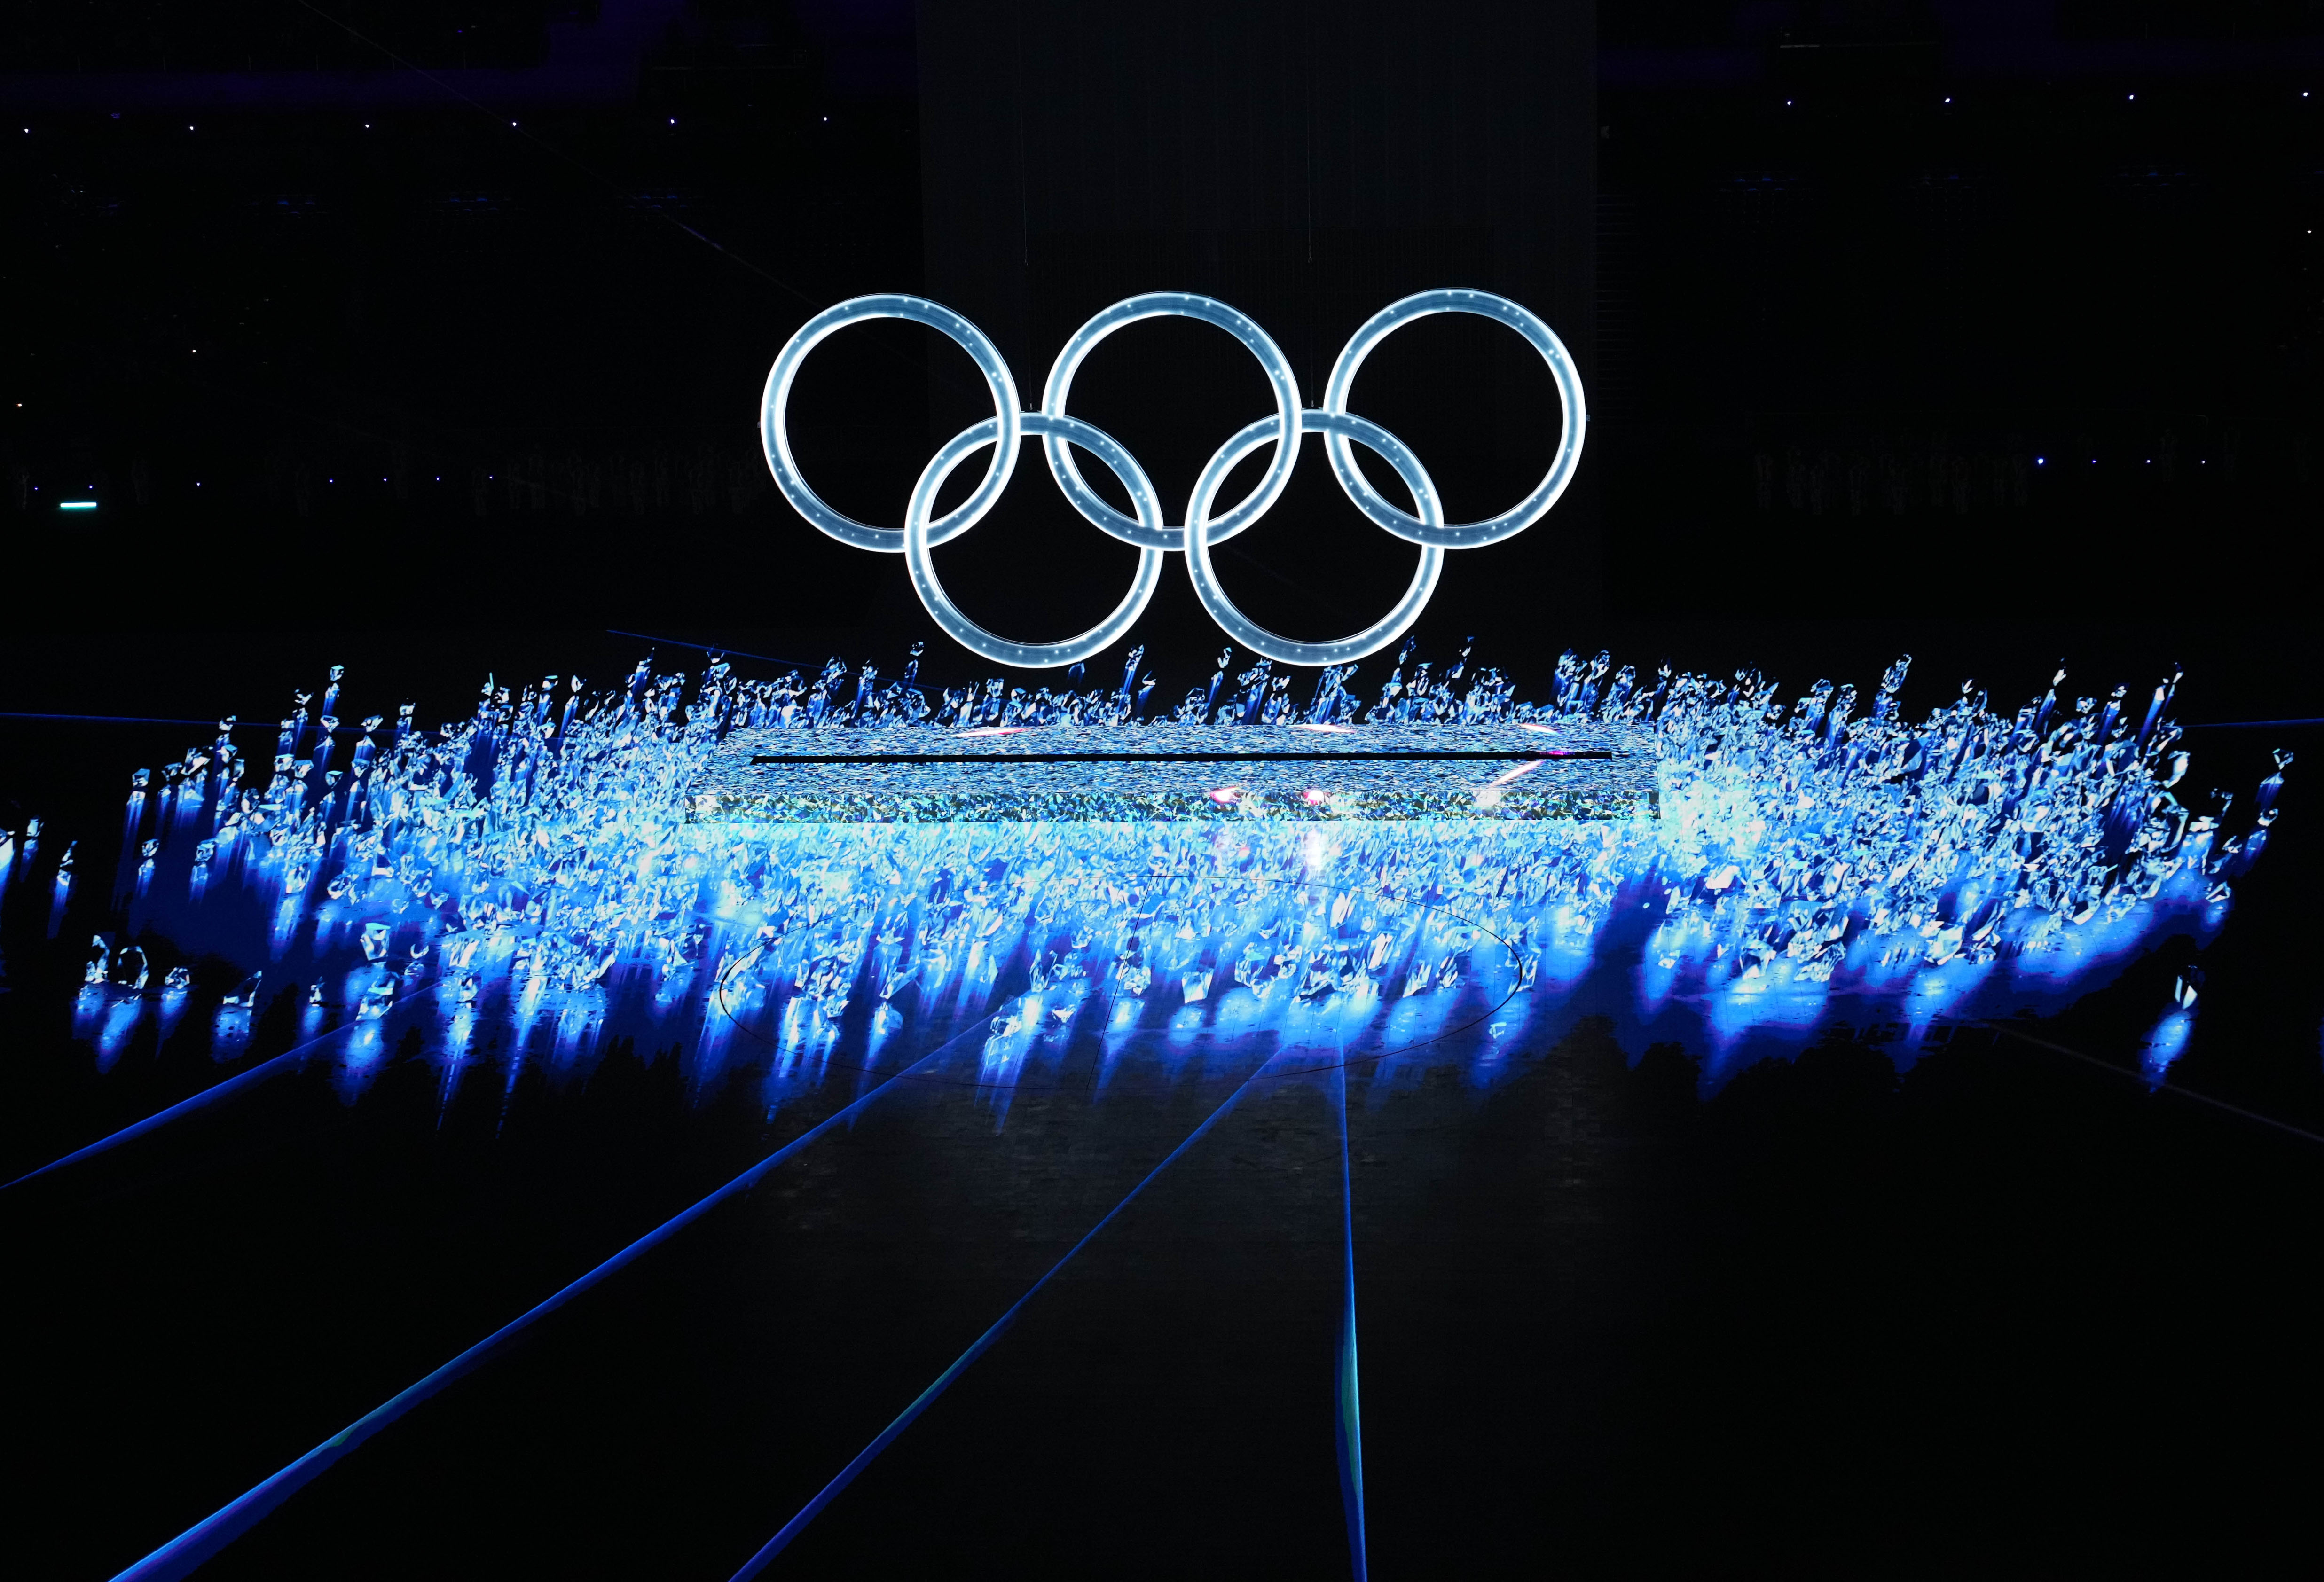 冬奥会文化自信图片